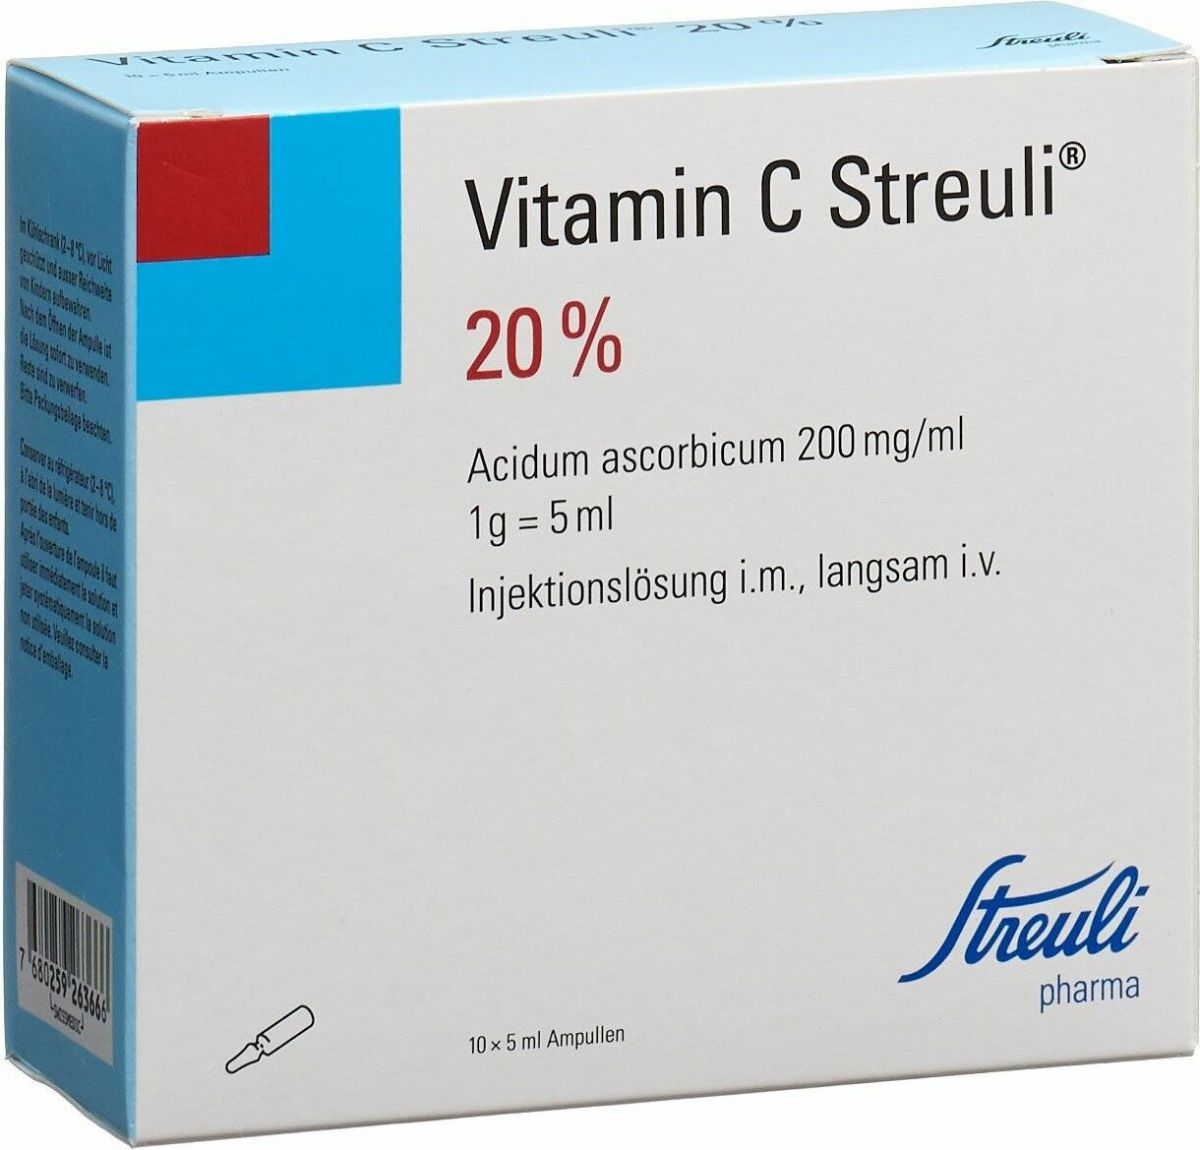 Reusachtig voor de hand liggend verkoper Vitamin C Streuli Injektionslösung 20% 10 Ampullen 5ml in der Adler Apotheke